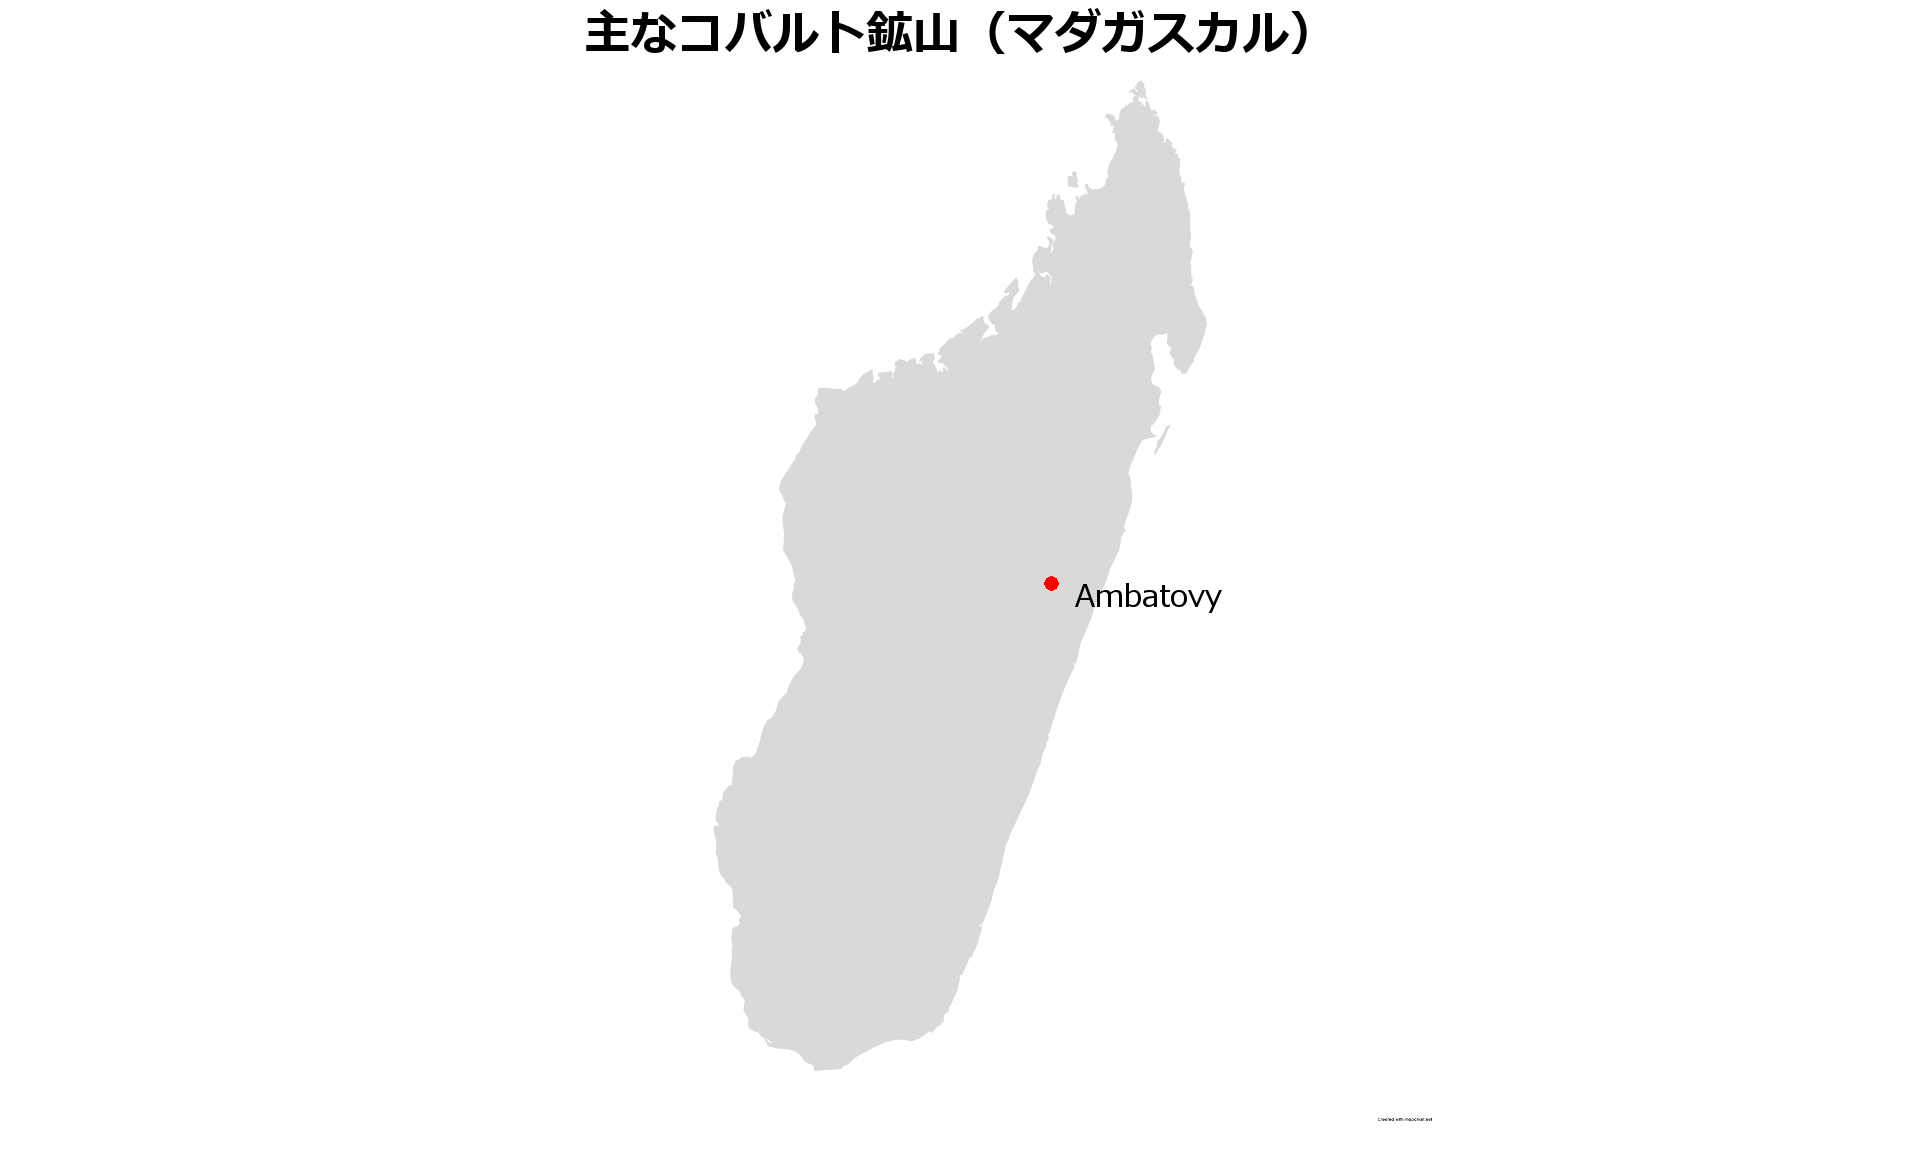 マダガスカルコバルト鉱山地図